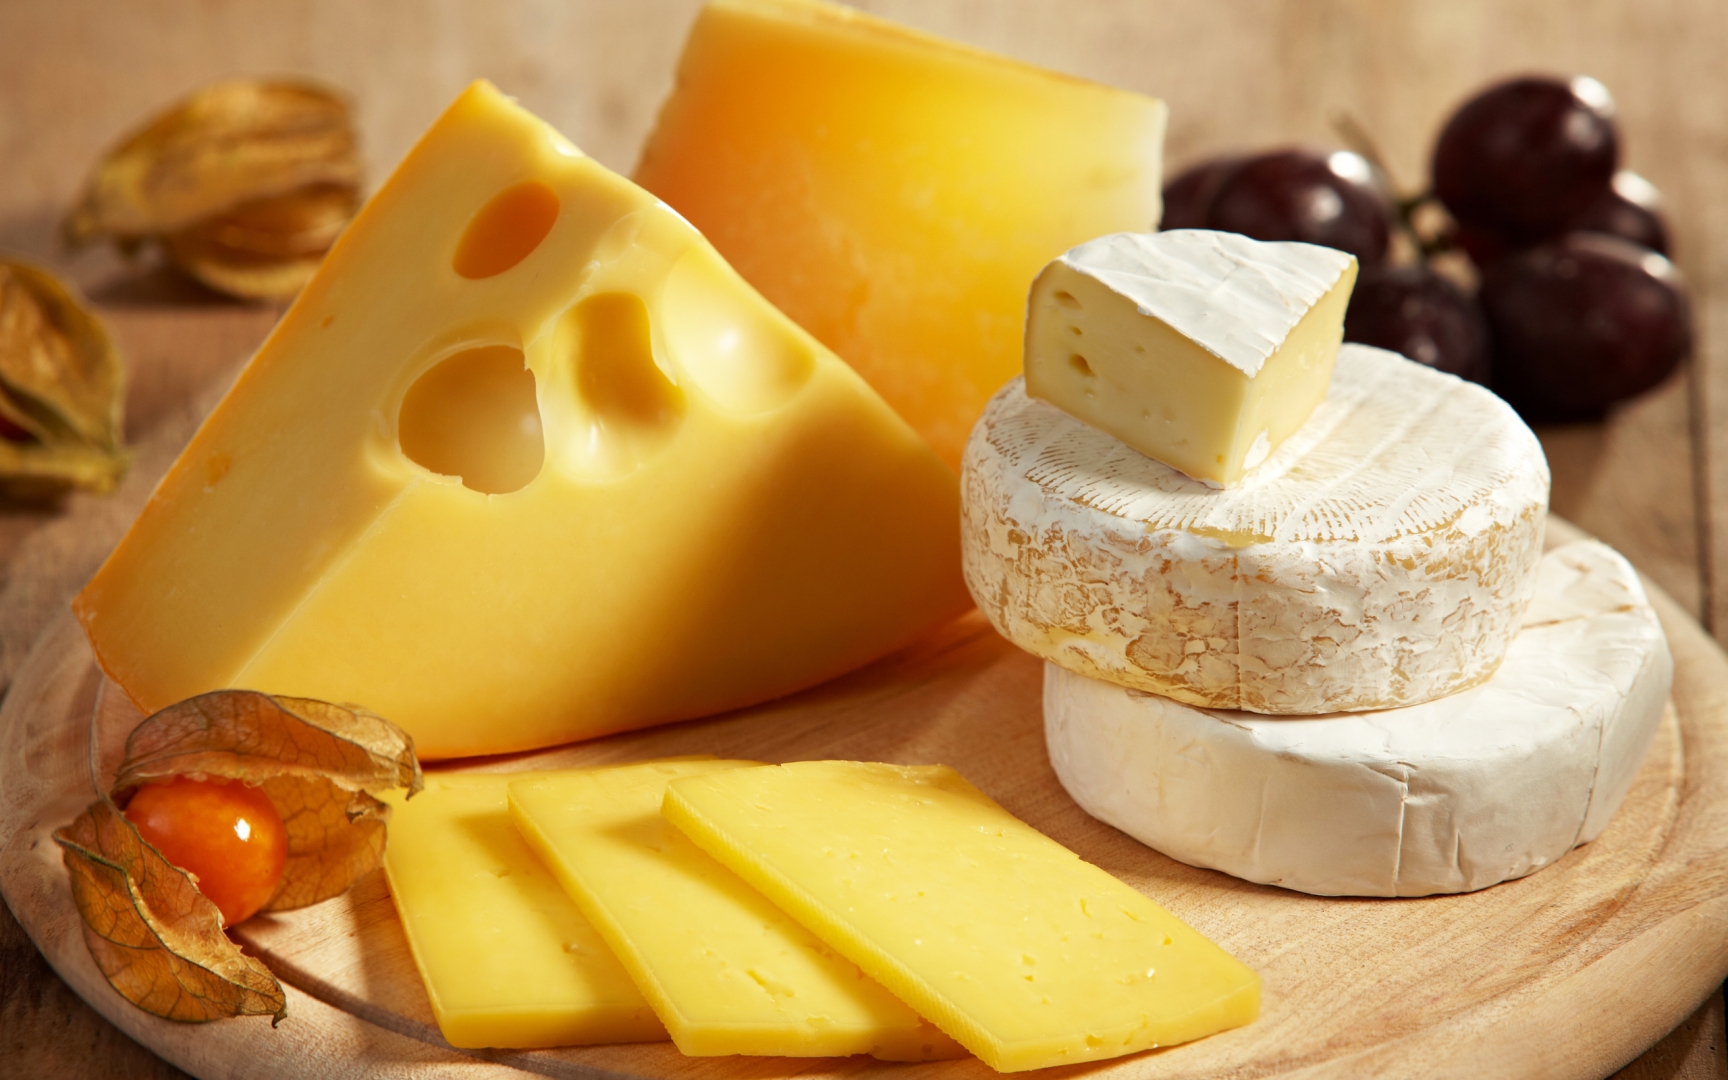  правильно хранить сыр в холодильнике? 15 правил | Блог Comfy